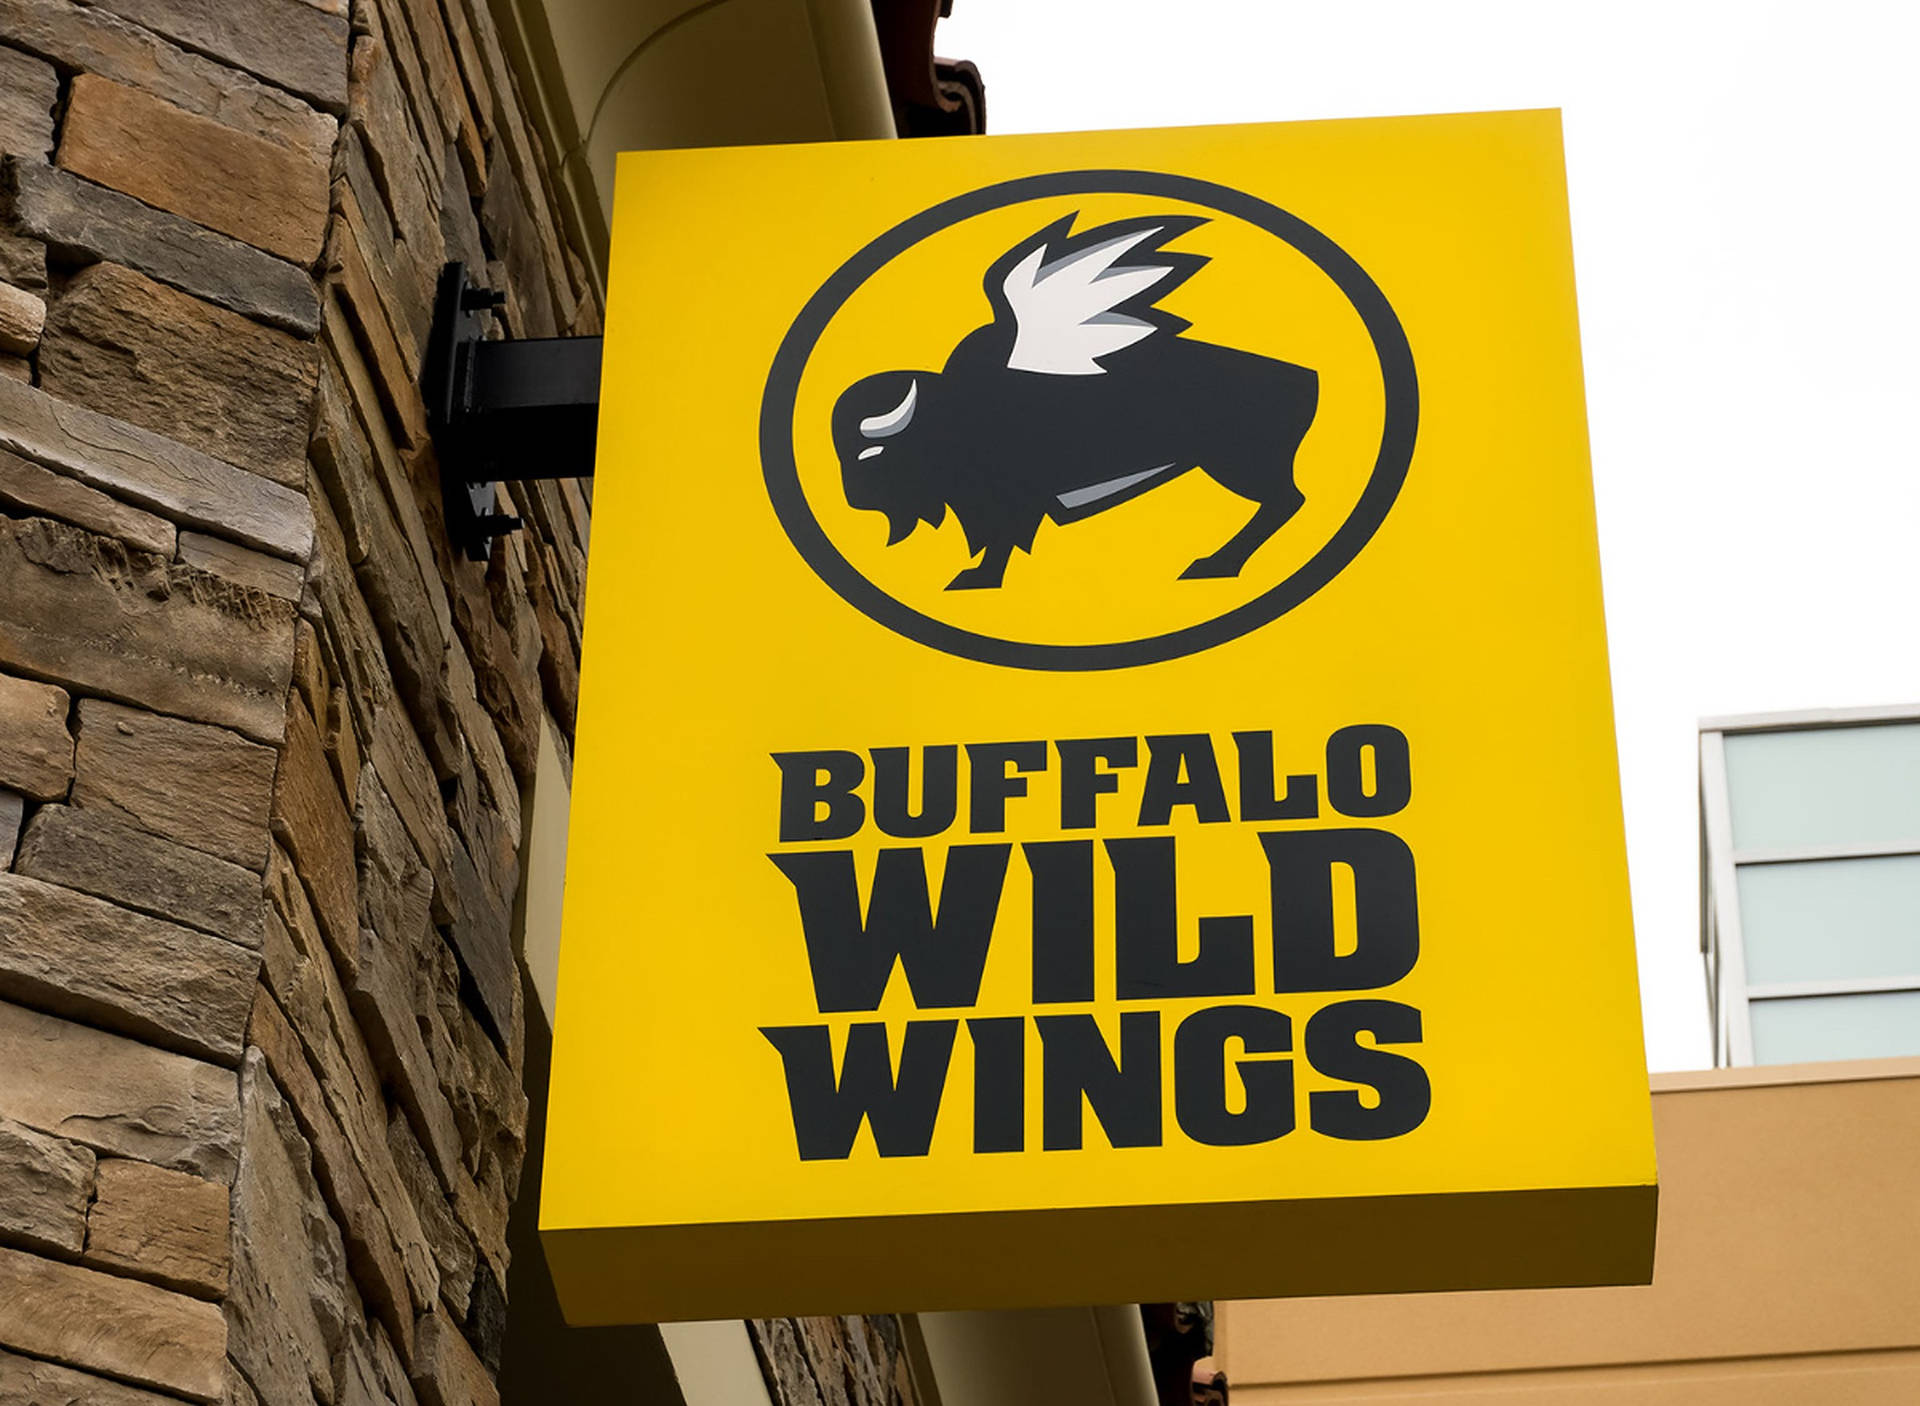 Letrasamarillas Del Letrero De Buffalo Wild Wings Fondo de pantalla